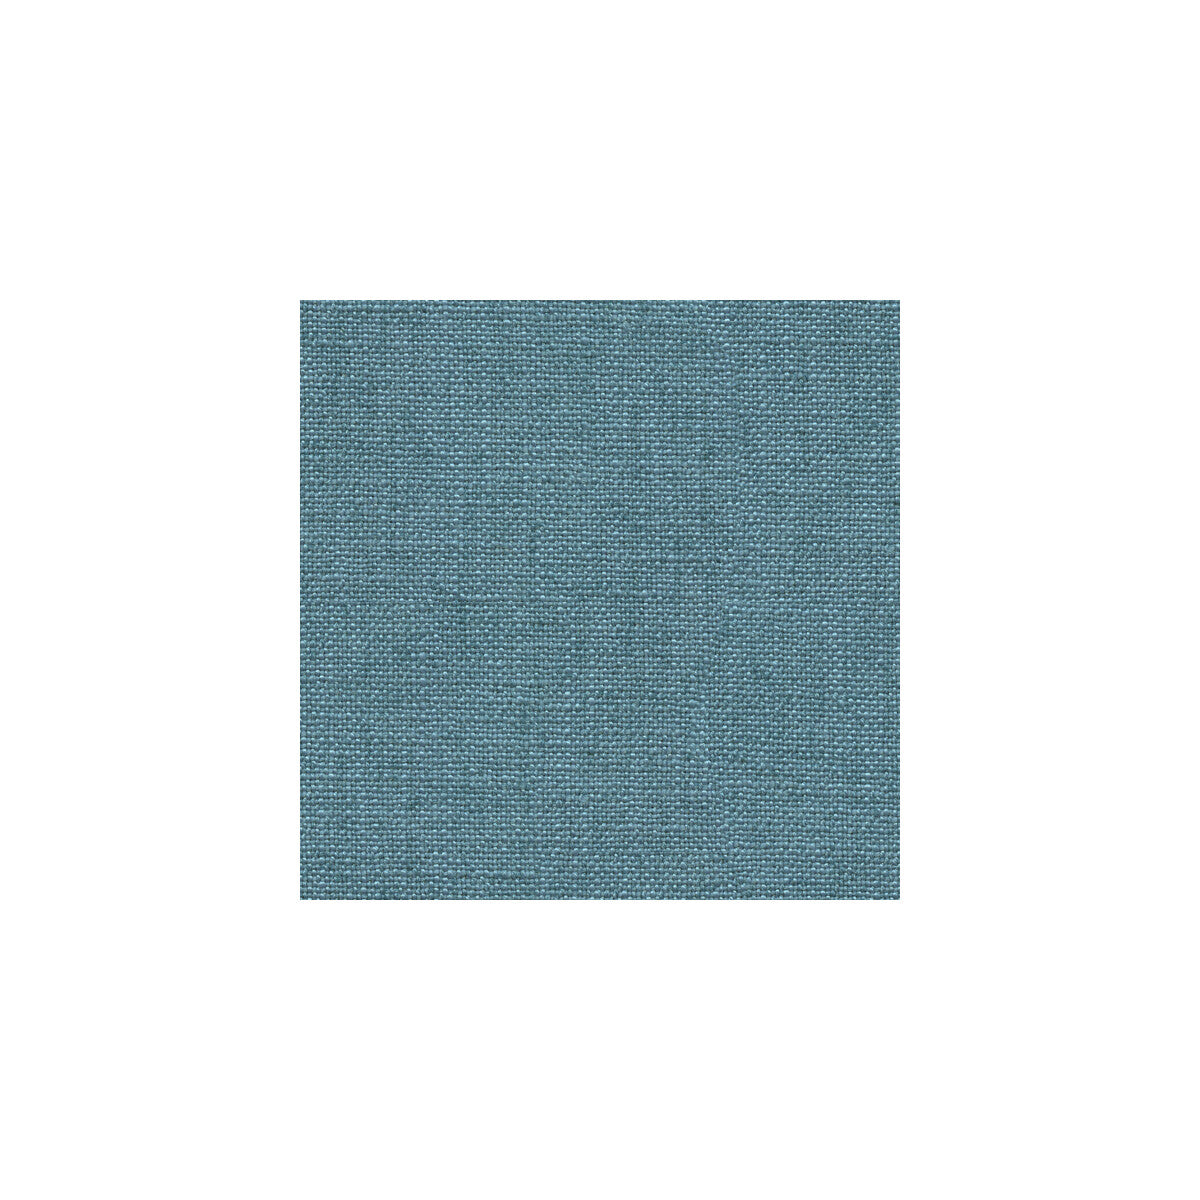 Kravet Basics fabric in 33008-5 color - pattern 33008.5.0 - by Kravet Basics